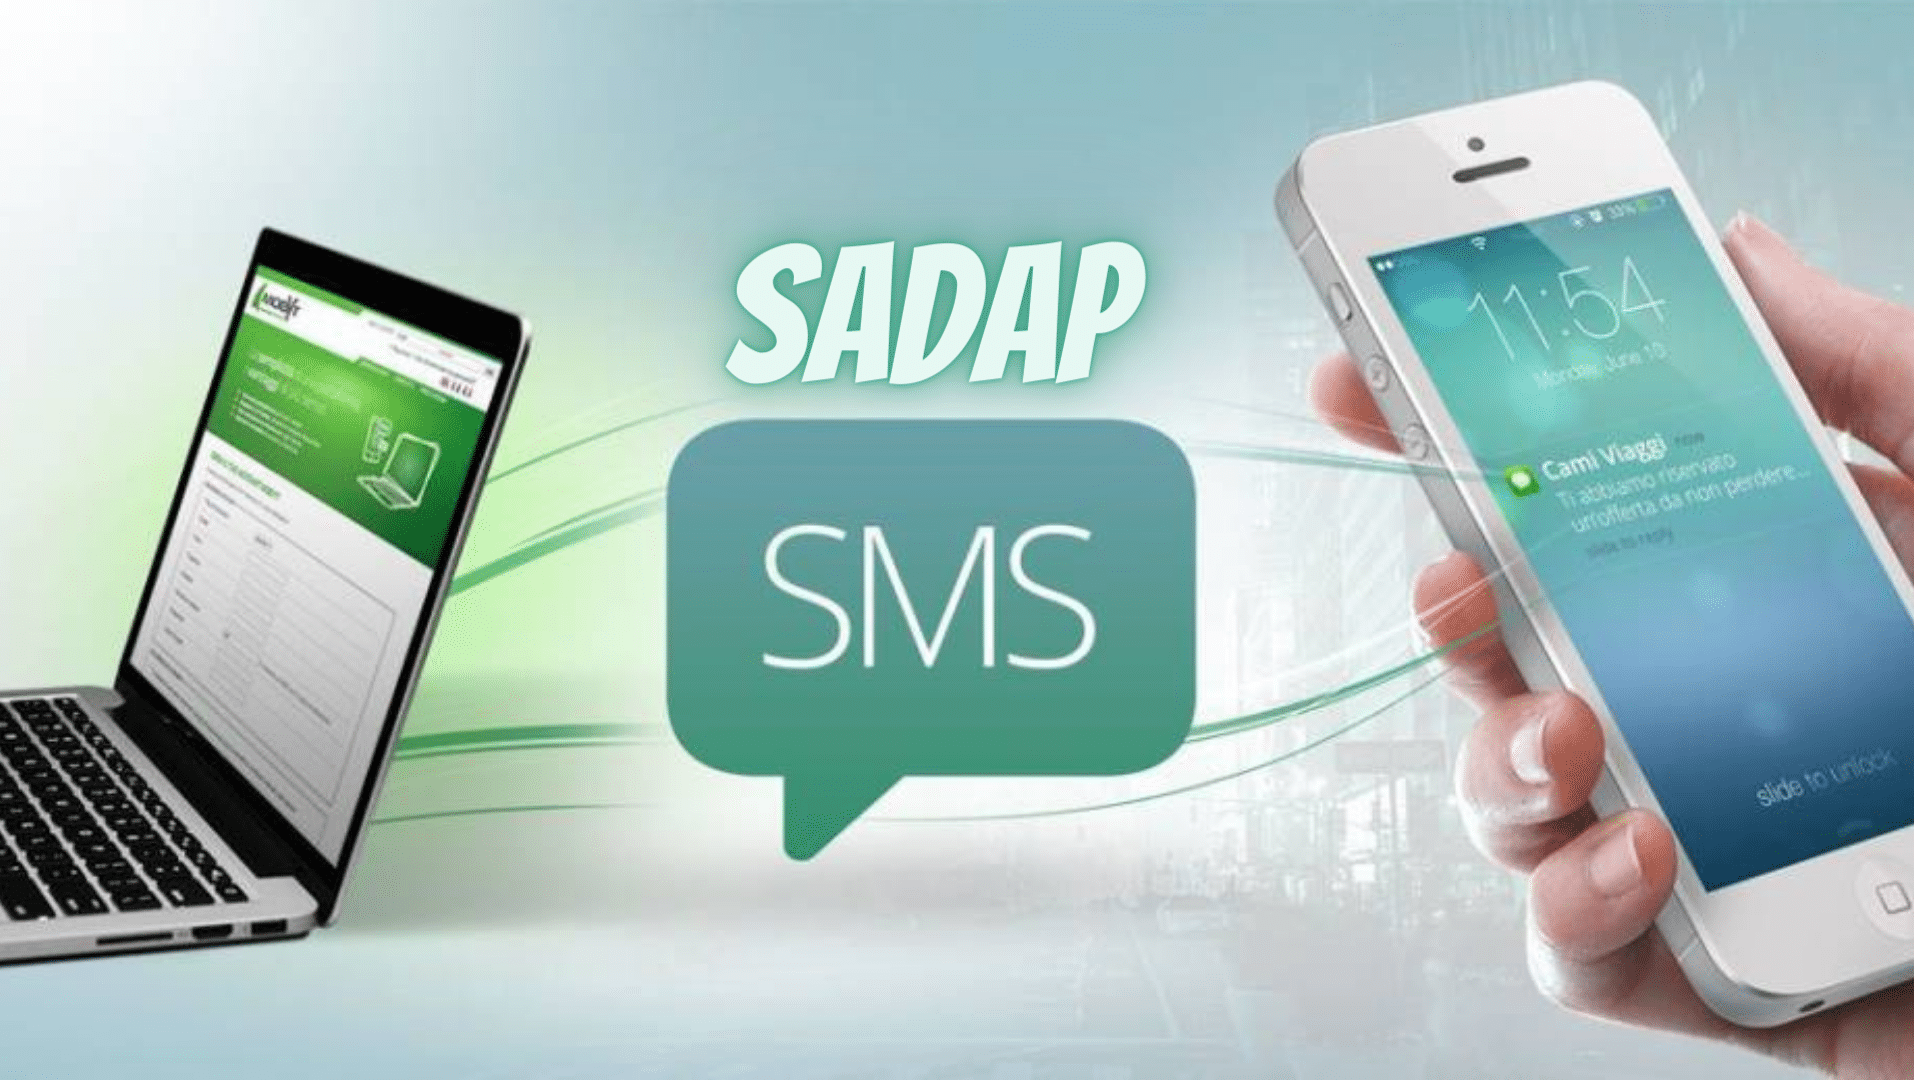 Bagaimana cara menyadap SMS di kartu Indosat?